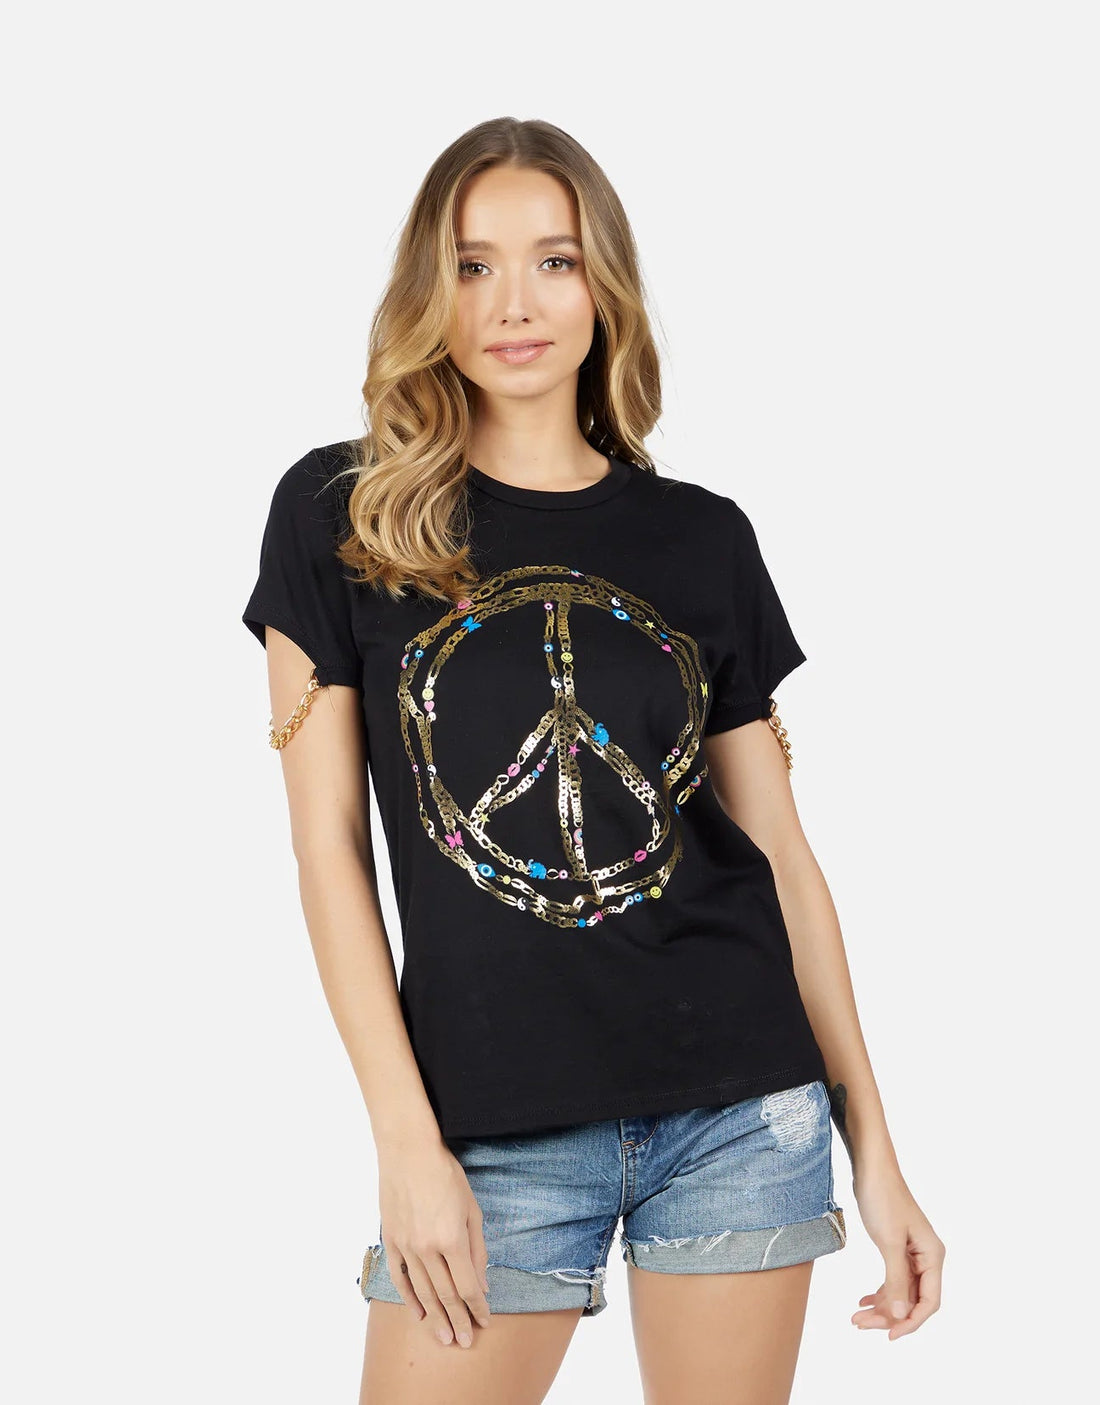 Shop Lauren Moshi Shandi Foil Chain Peace T-Shirt - Premium Vest Top from Lauren Moshi Online now at Spoiled Brat 